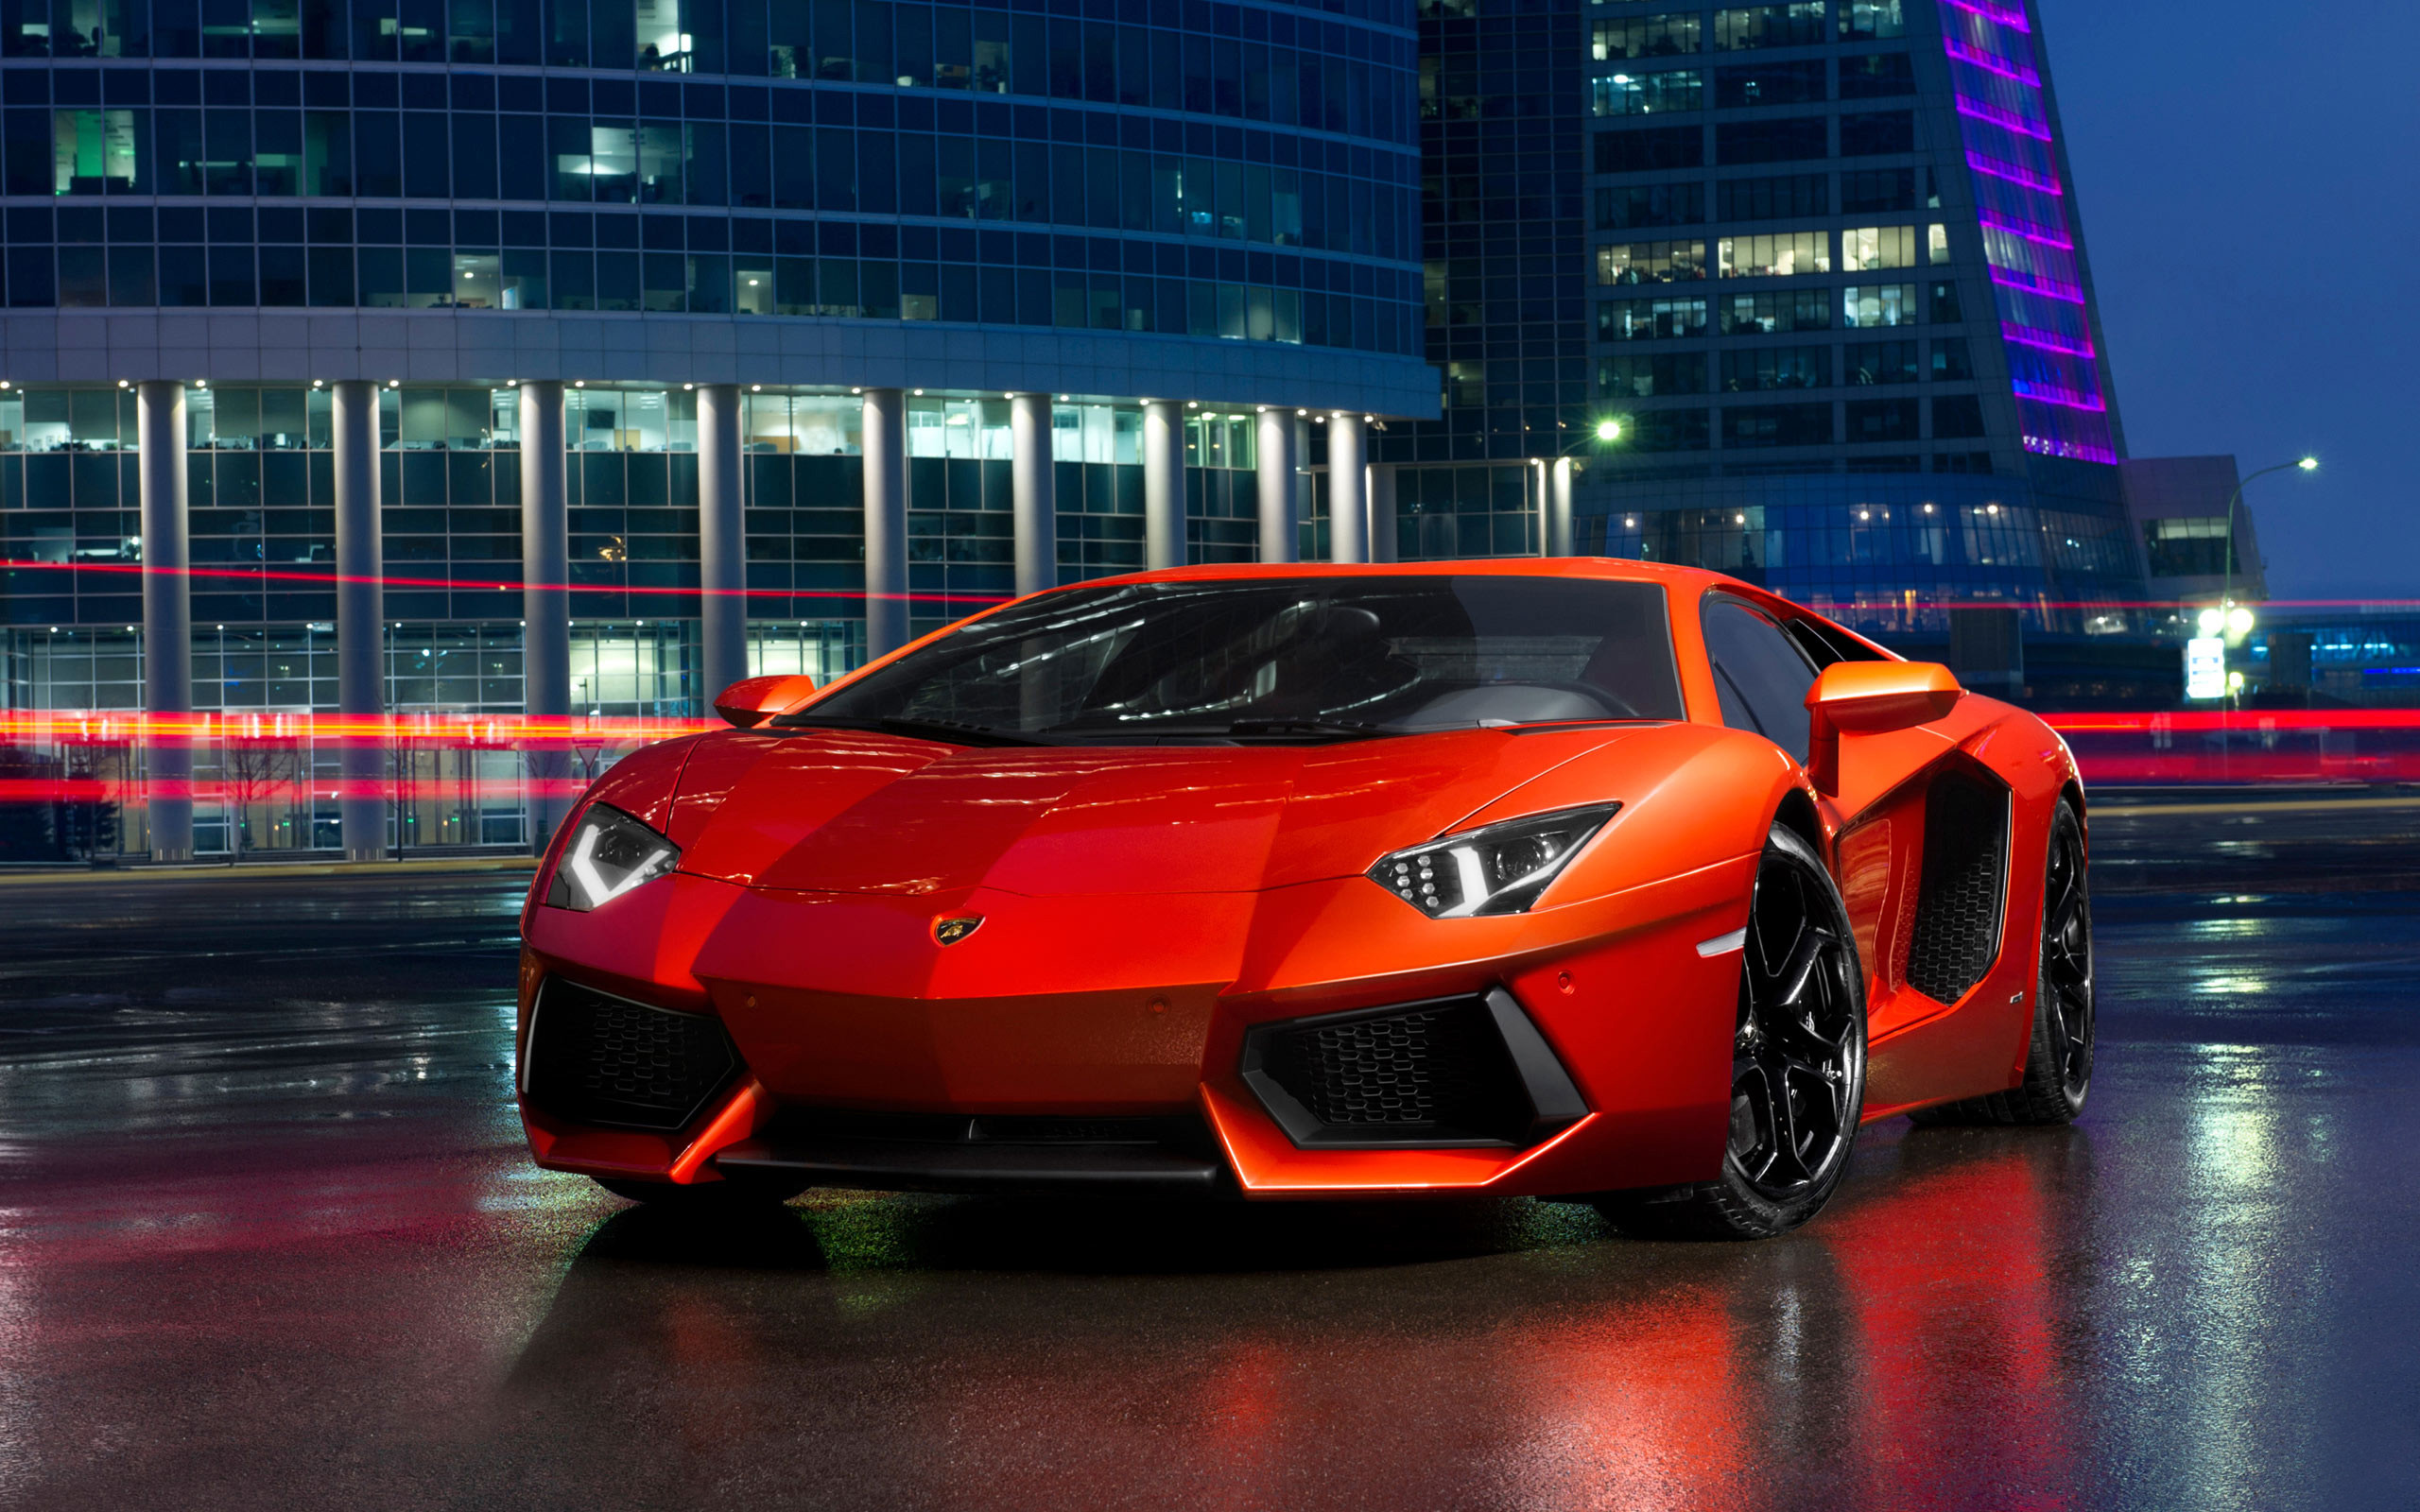 Với các mẫu hình nền độc đáo và sáng tạo về Lamborghini, trang web của chúng tôi đang chờ đón bạn khám phá và tải xuống. Hãy tận hưởng những bức ảnh nền chất lượng cao mang đậm phong cách của Lamborghini, để bạn có thể tự do lựa chọn để tăng thêm không gian làm việc hoặc sở thích cá nhân của mình!